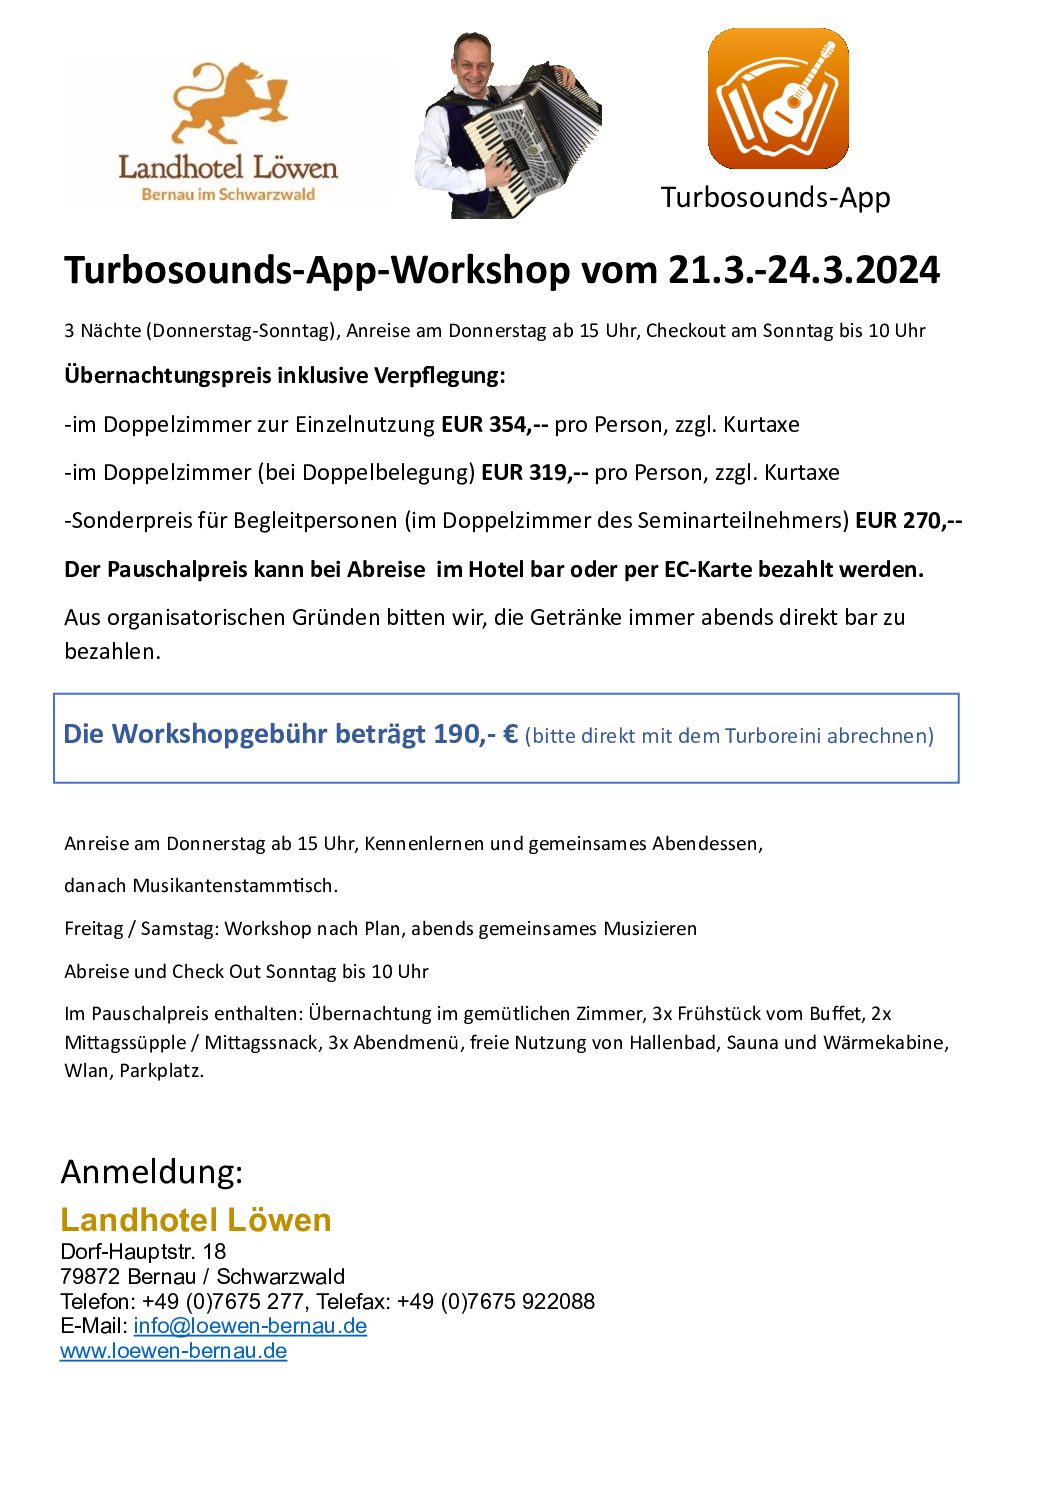 Turbosounds-App-Vorführung in der schönen Schweiz am Sonntag den 15.10.2023